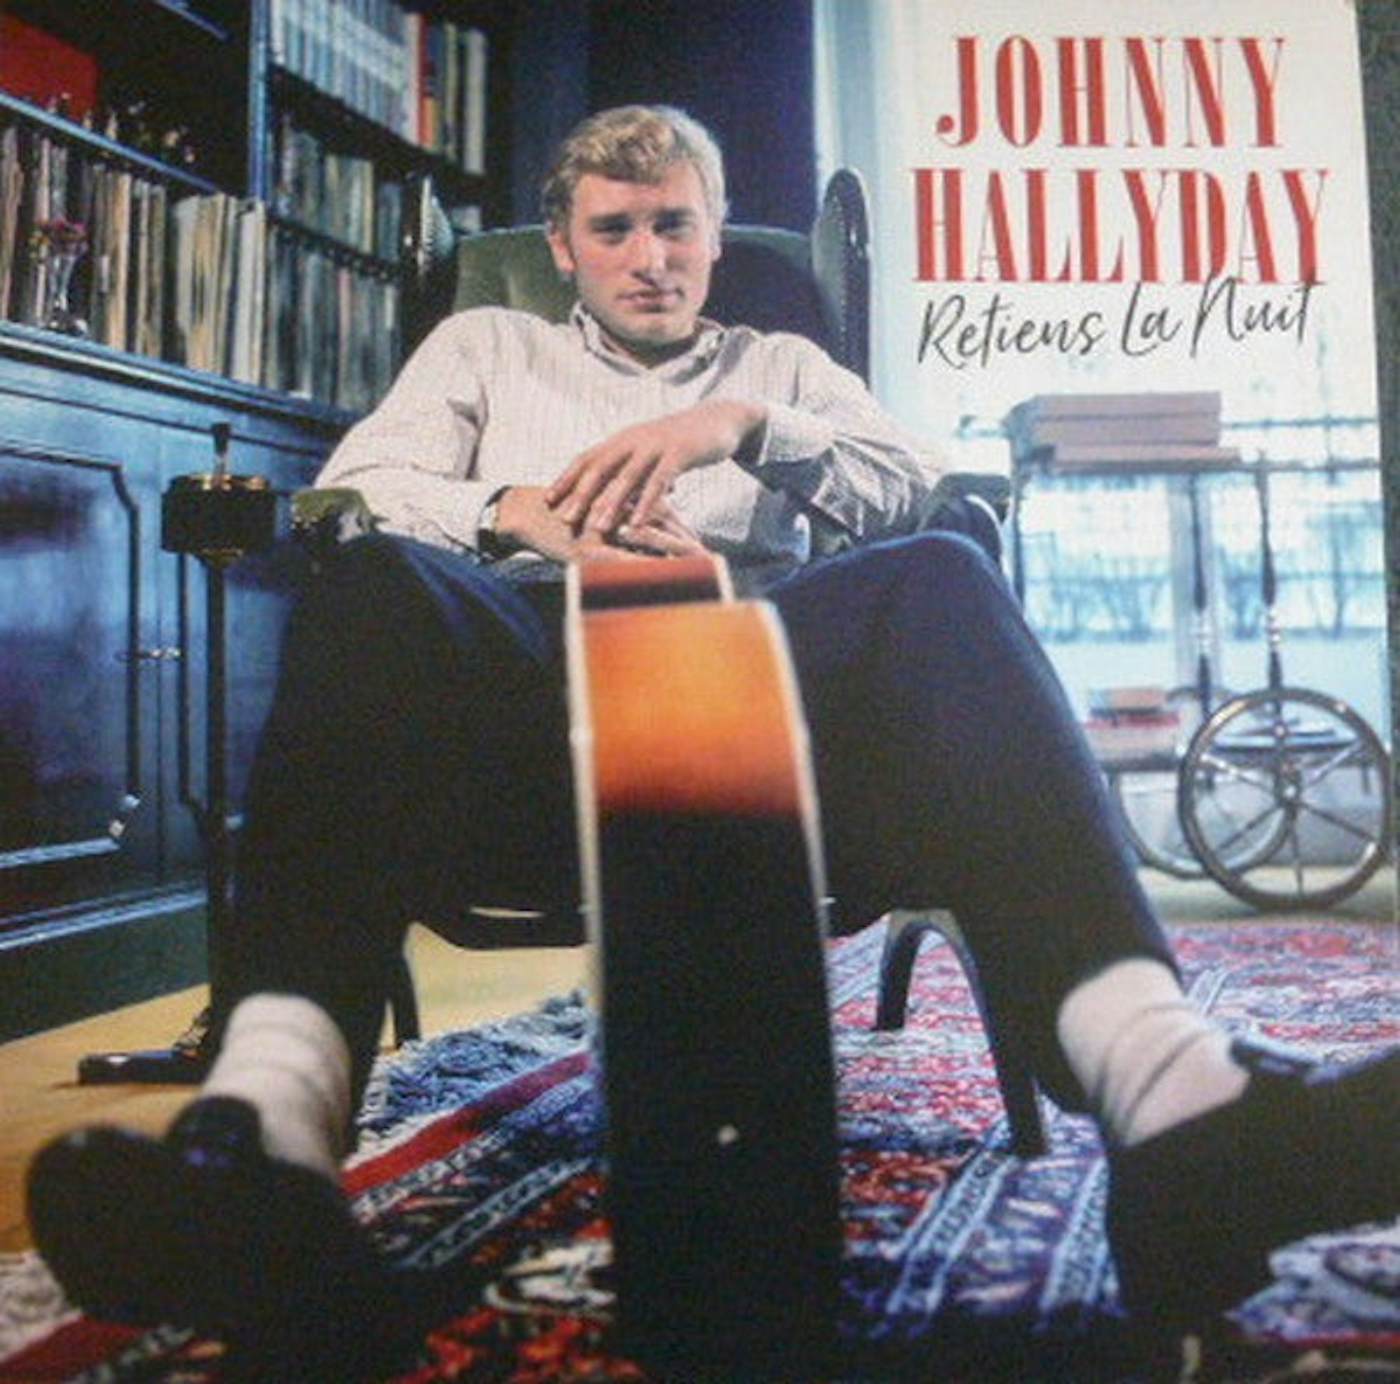 Vinyle Johnny Hallyday - Retiens la nuit